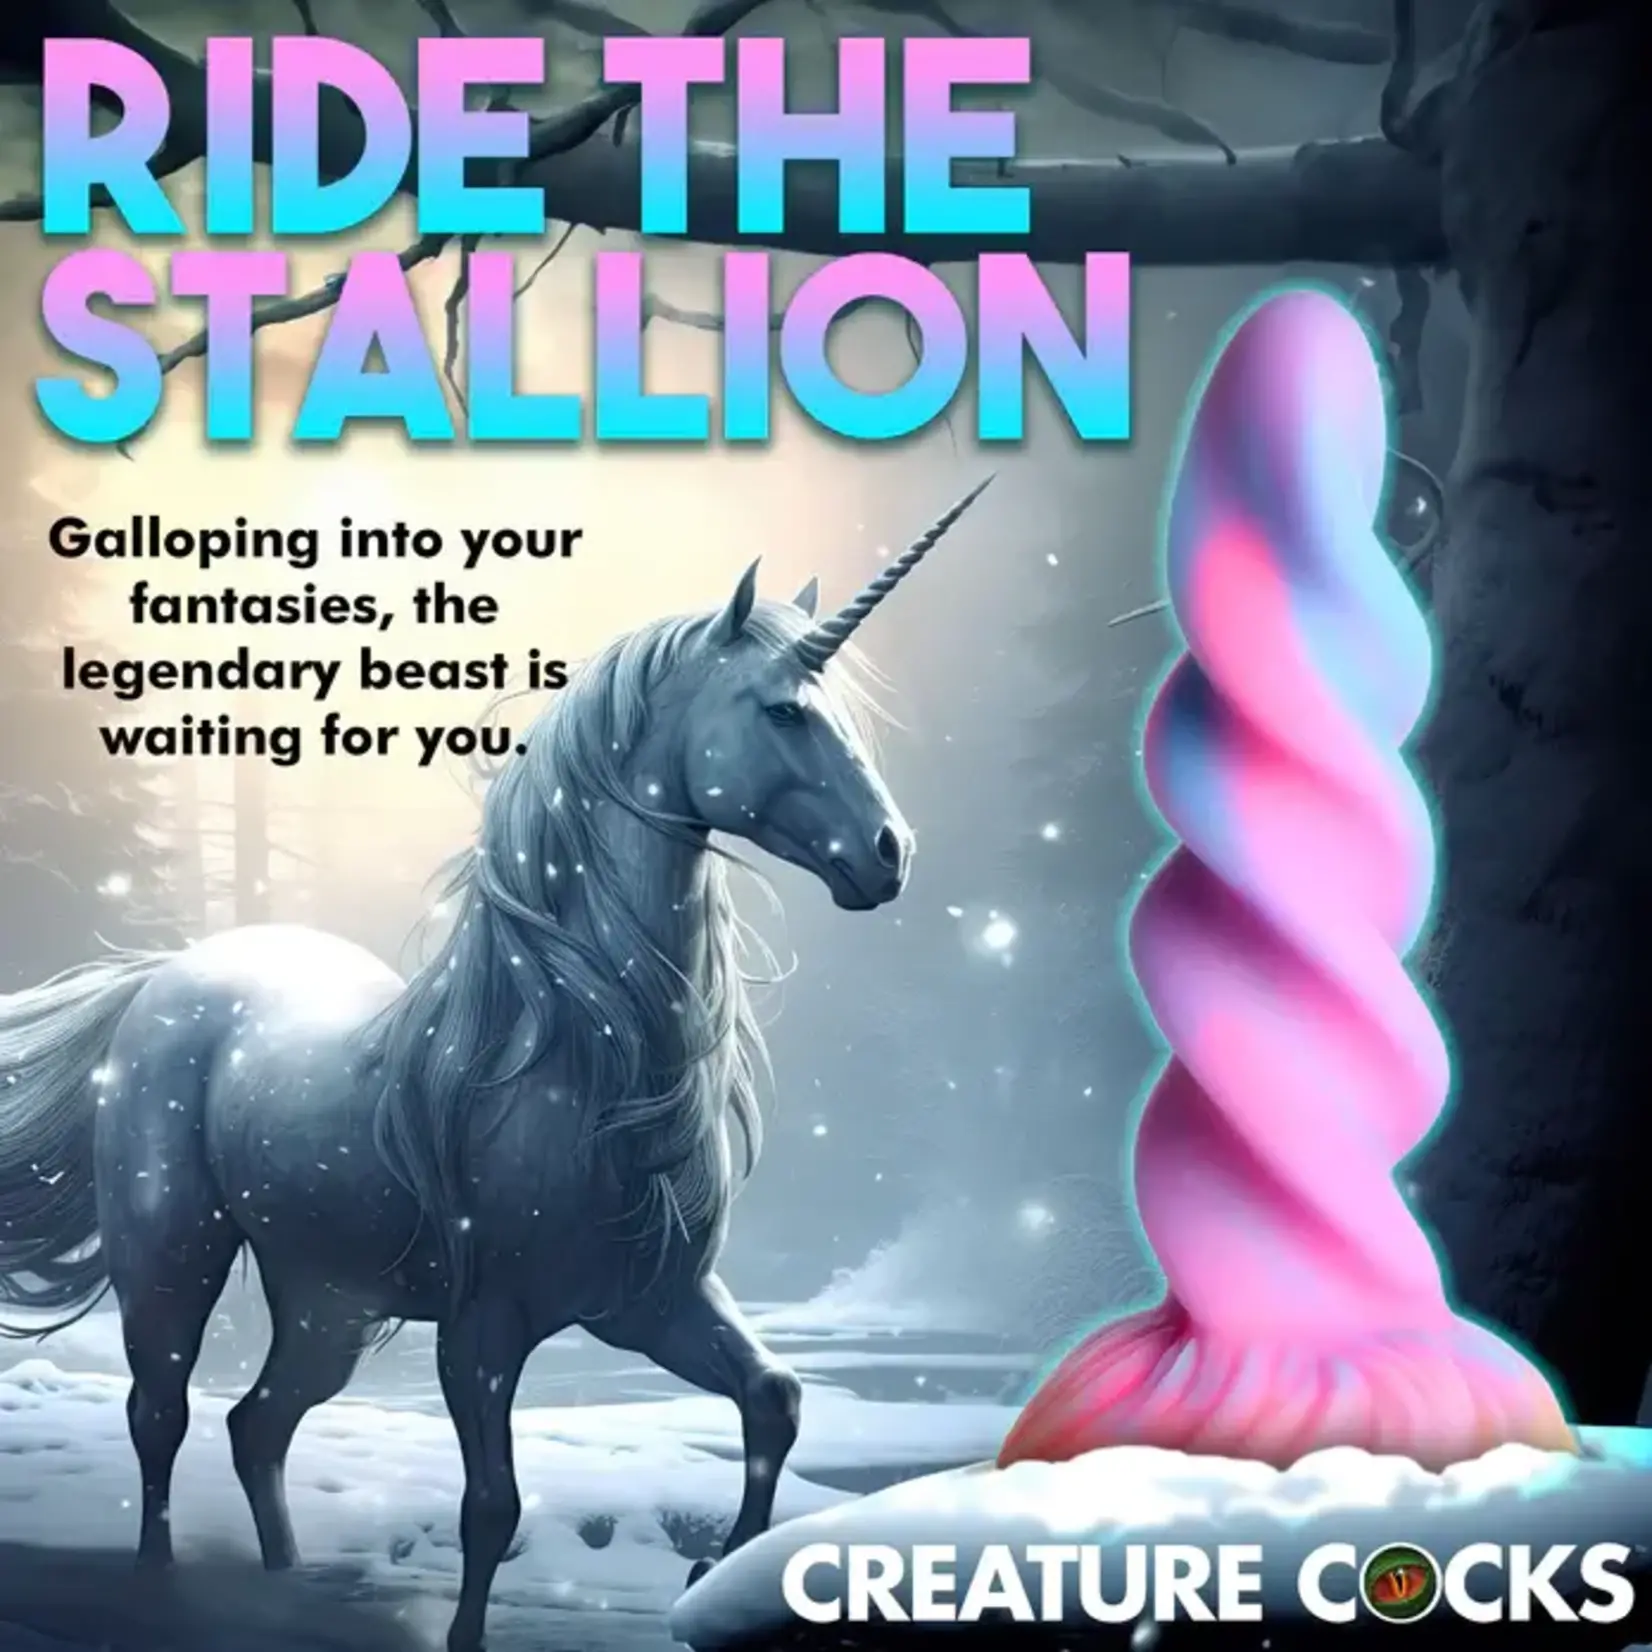 Creature Cocks Moon Rider Glow in the Dark Unicorn Silicone Dildo - Multicolor